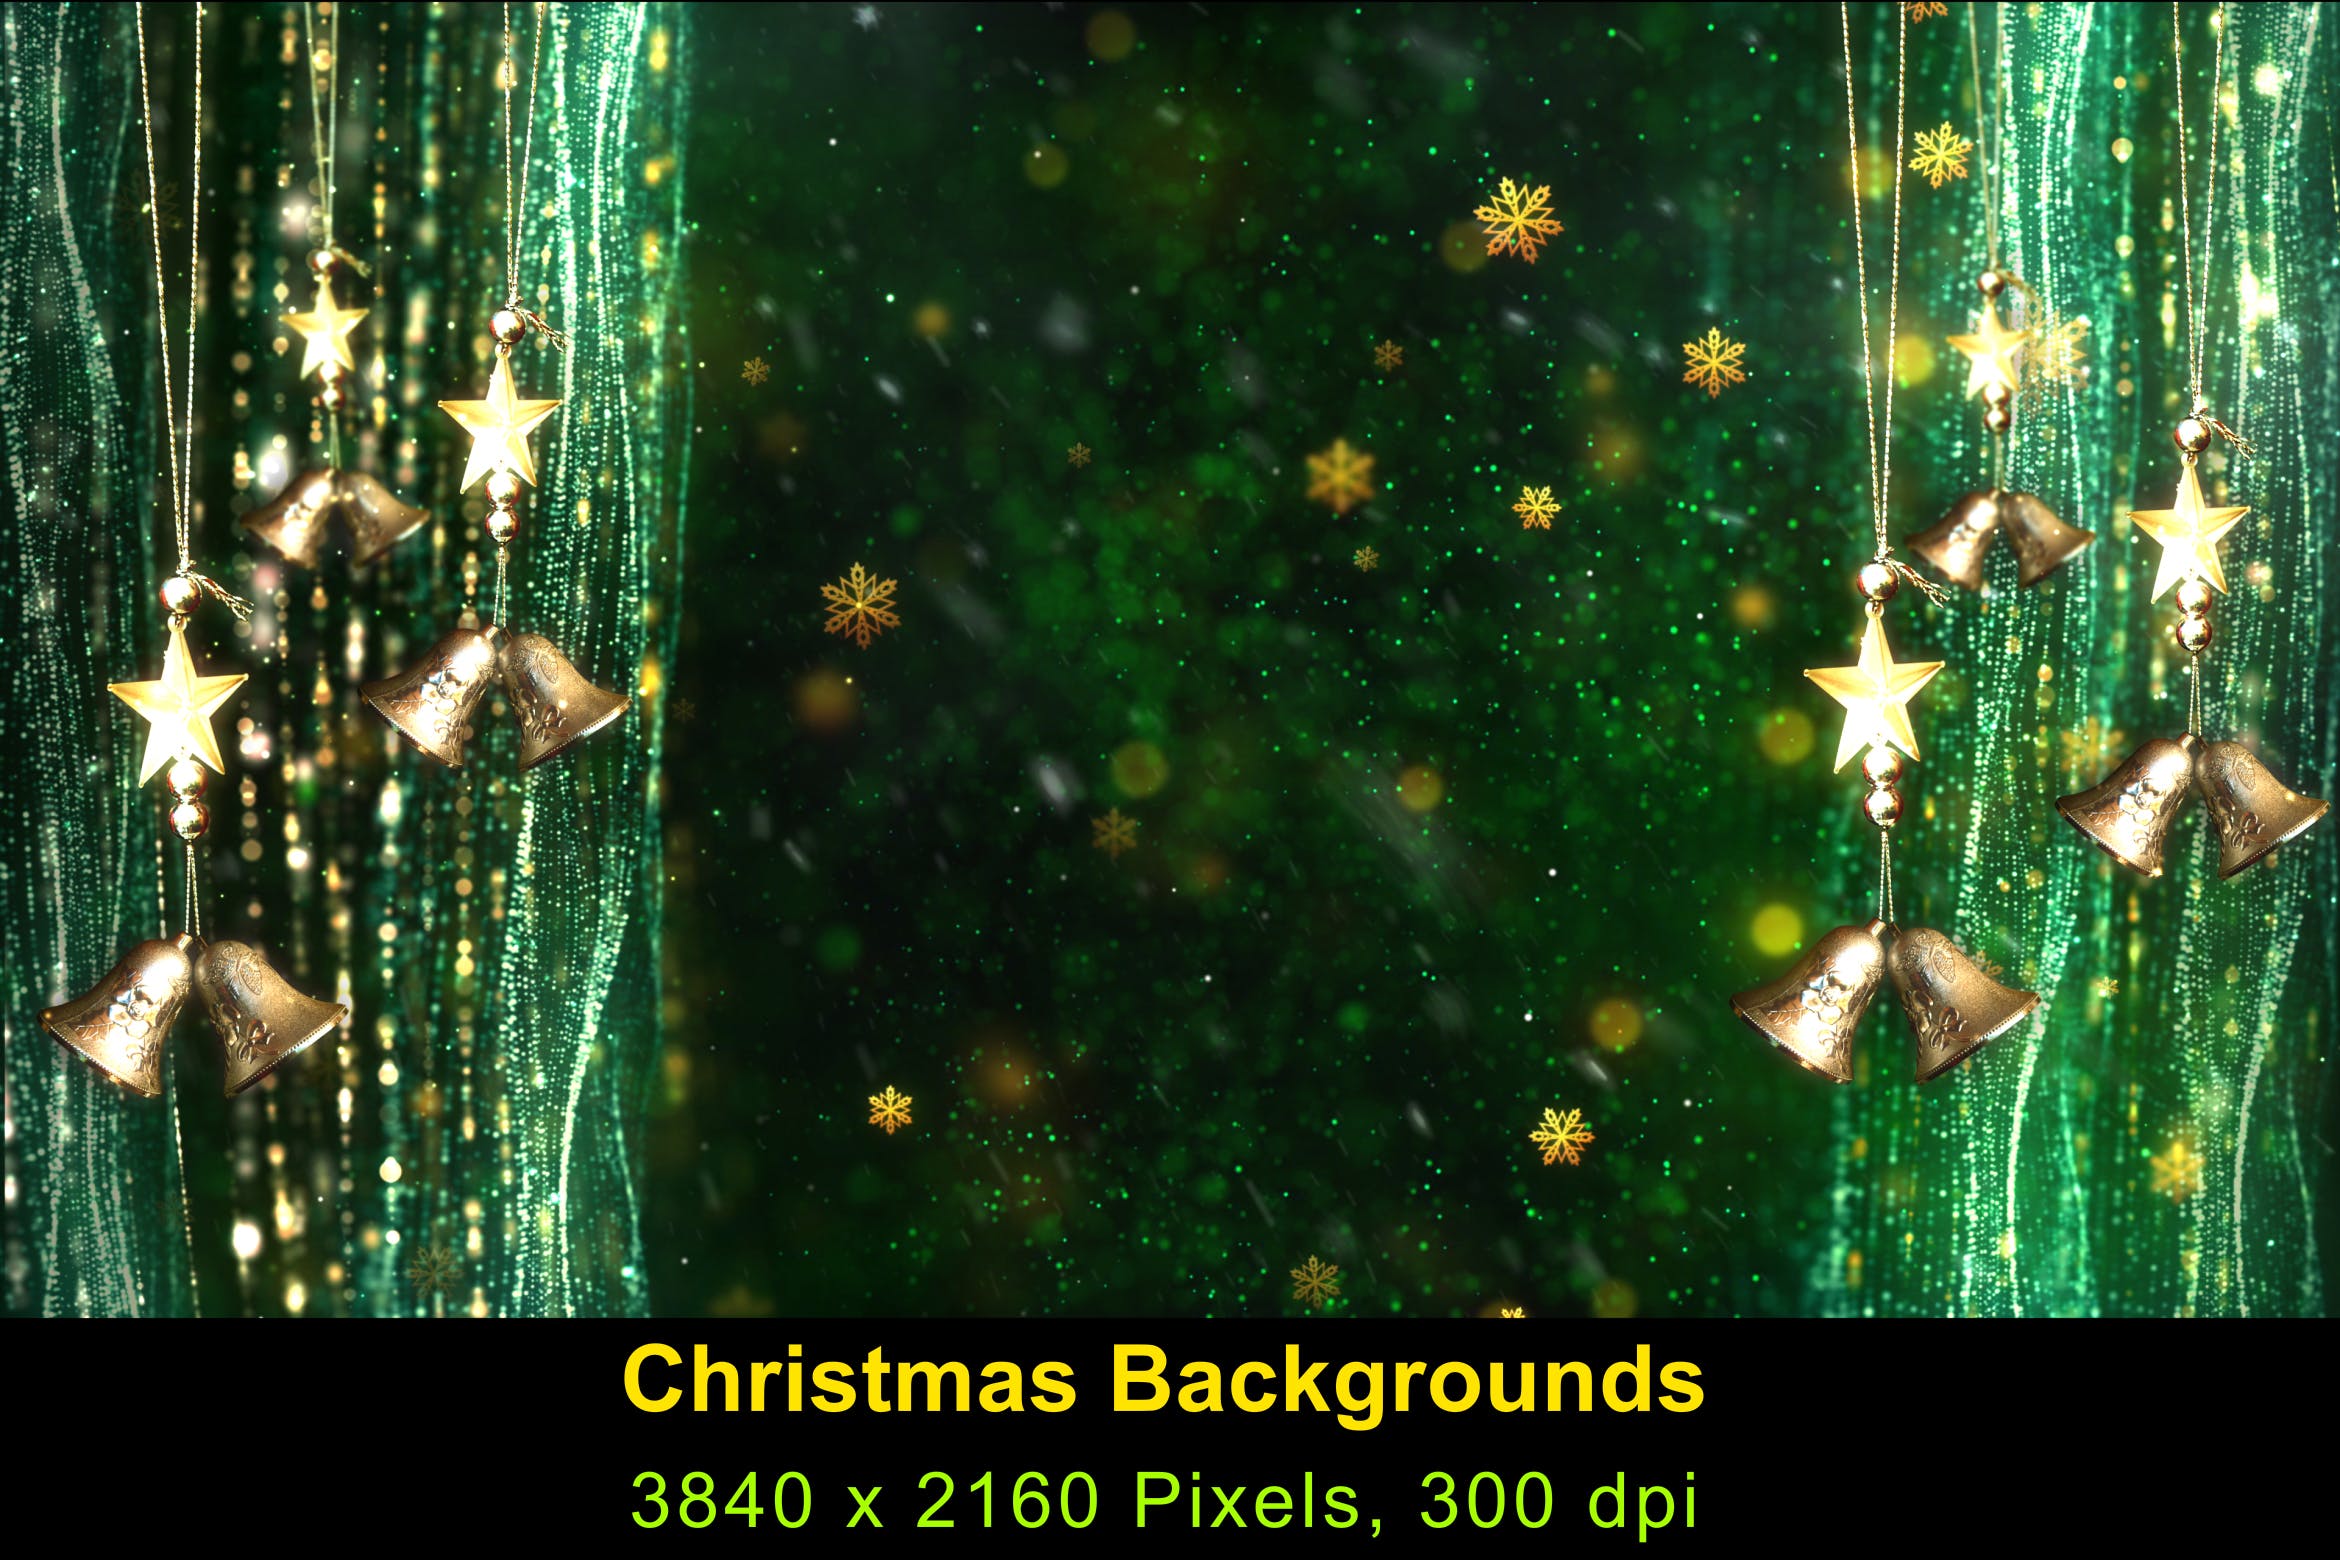 高清圣诞节灯饰背景素材v4 Christmas Background 4插图